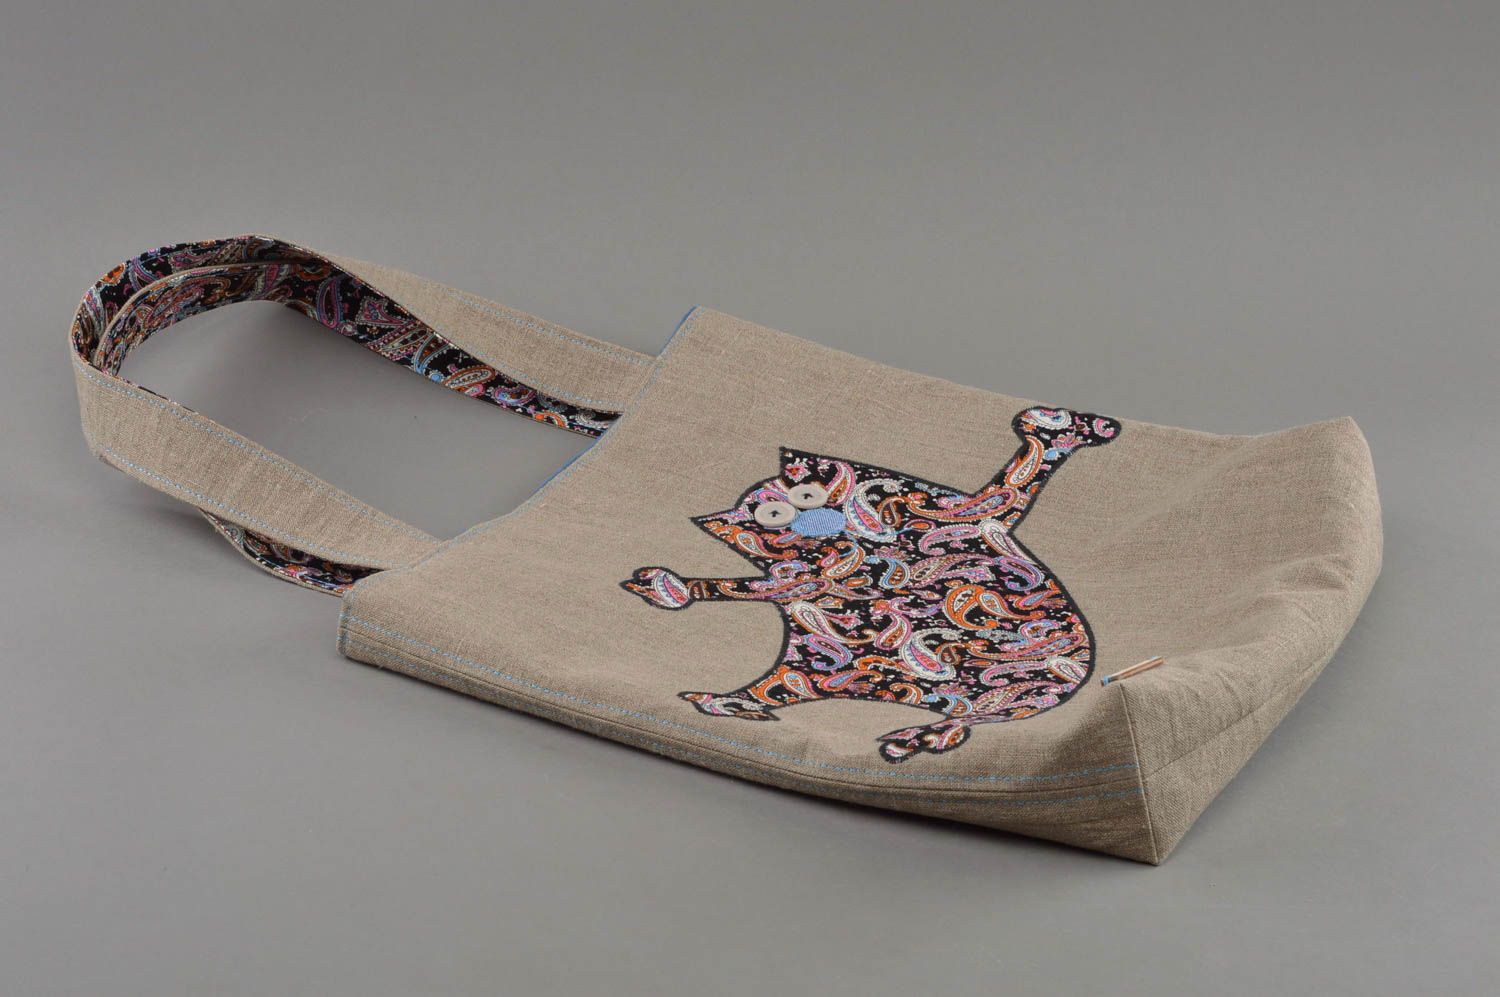 Gros sac à main en tissu fait main avec doublure et applique chat joyeux photo 1